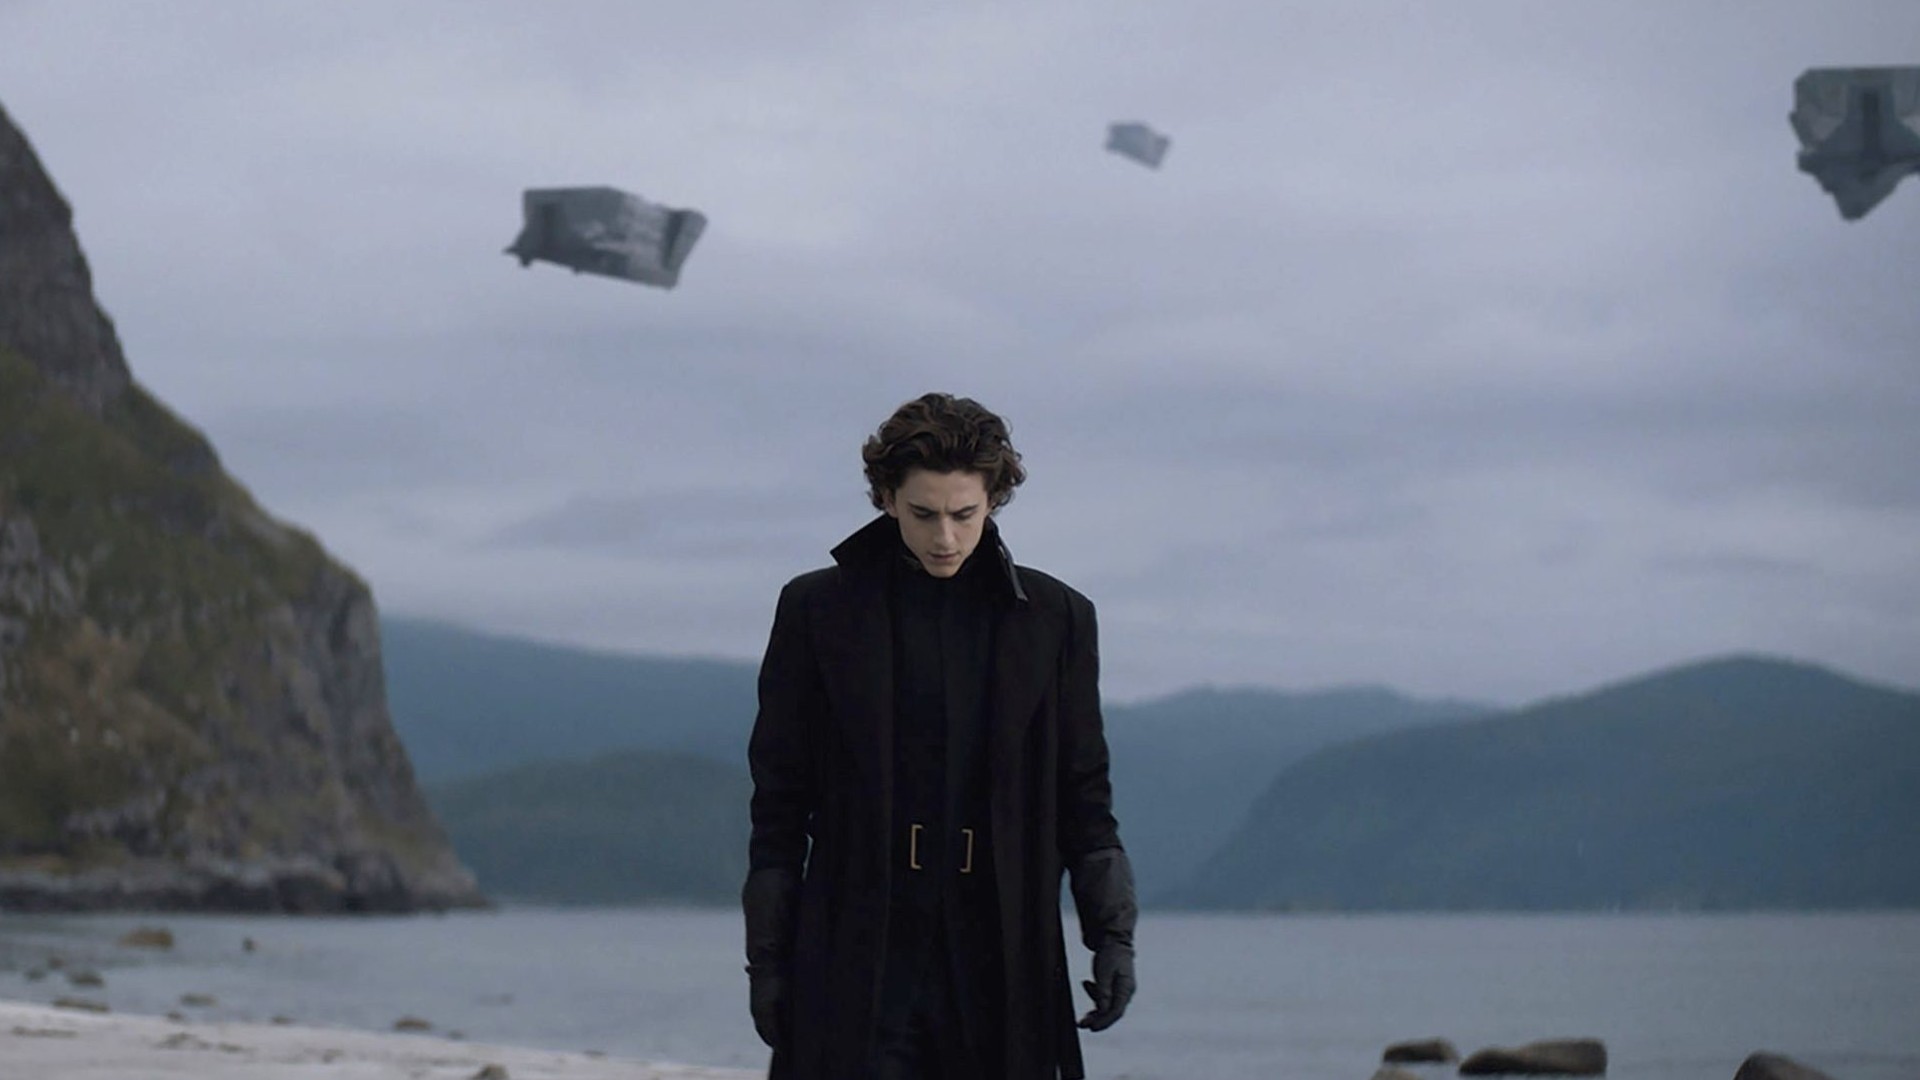 Paul caminha de cabeça baixa perto de um lago no filme de 2021 Dune.